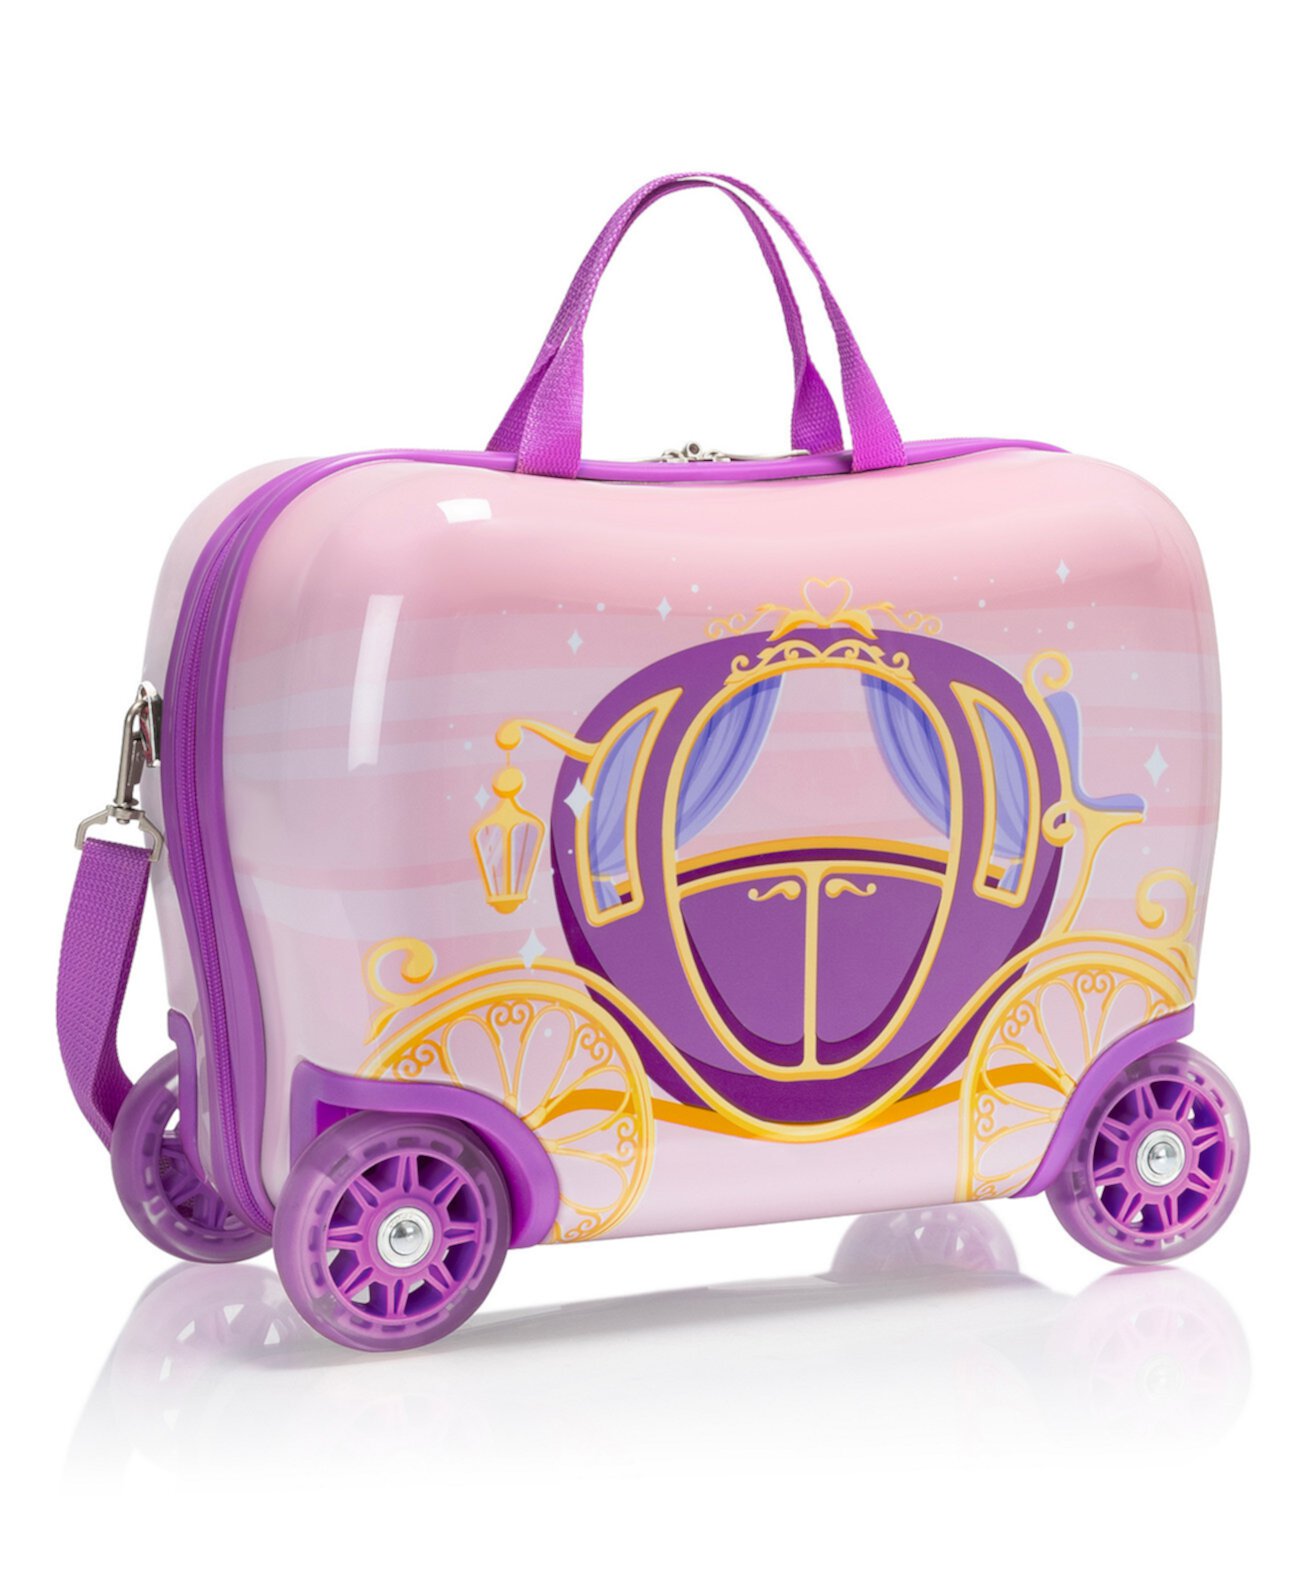 Hey's Kids Ride-on Luggage w/Light-up Wheels - Fire Truck Heys